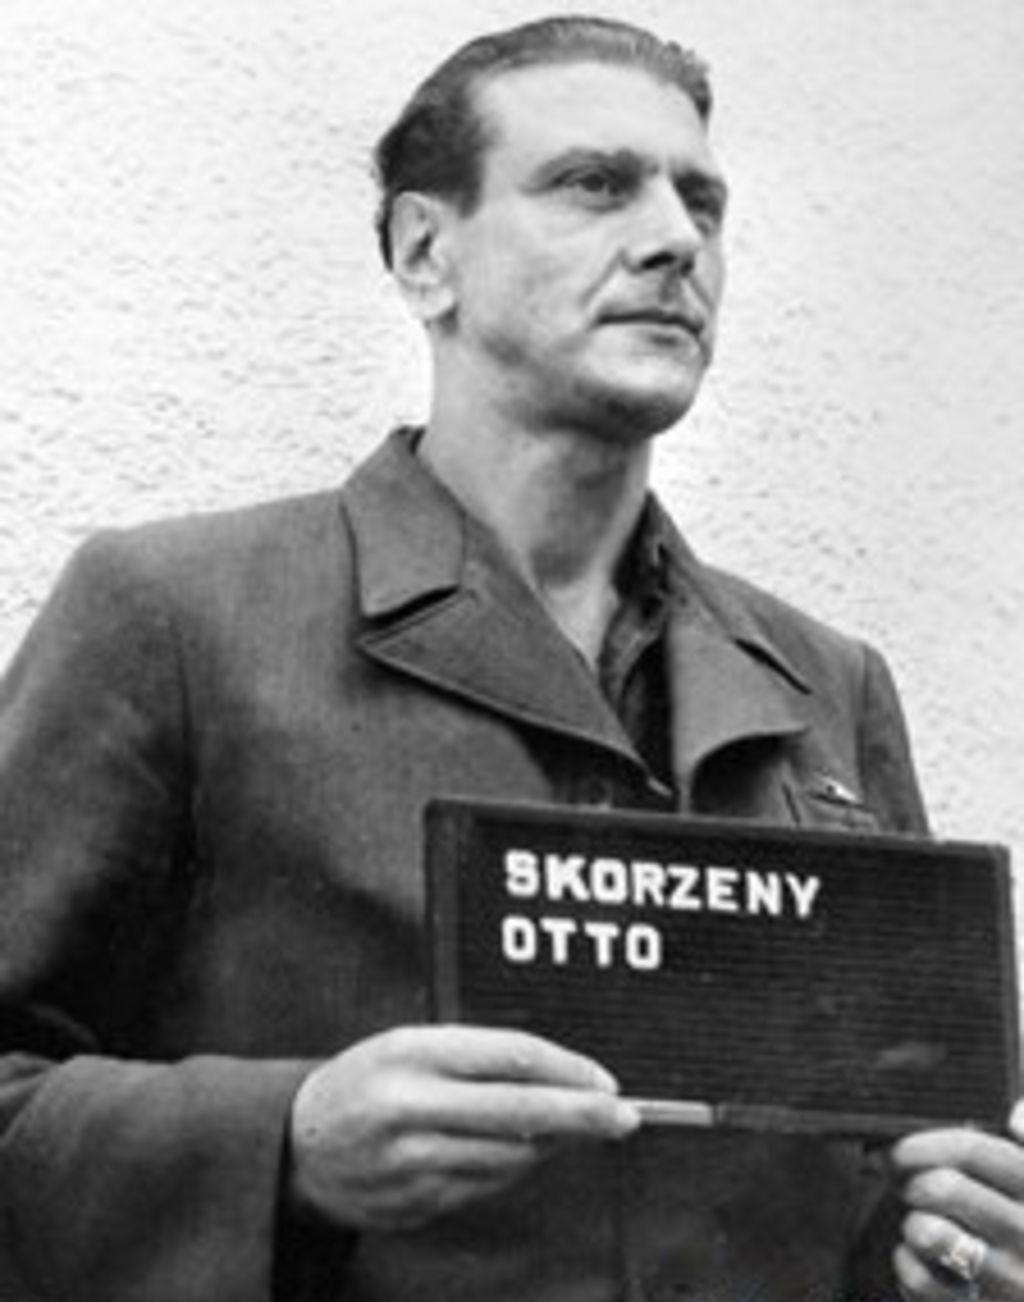  Otto Skorzeny